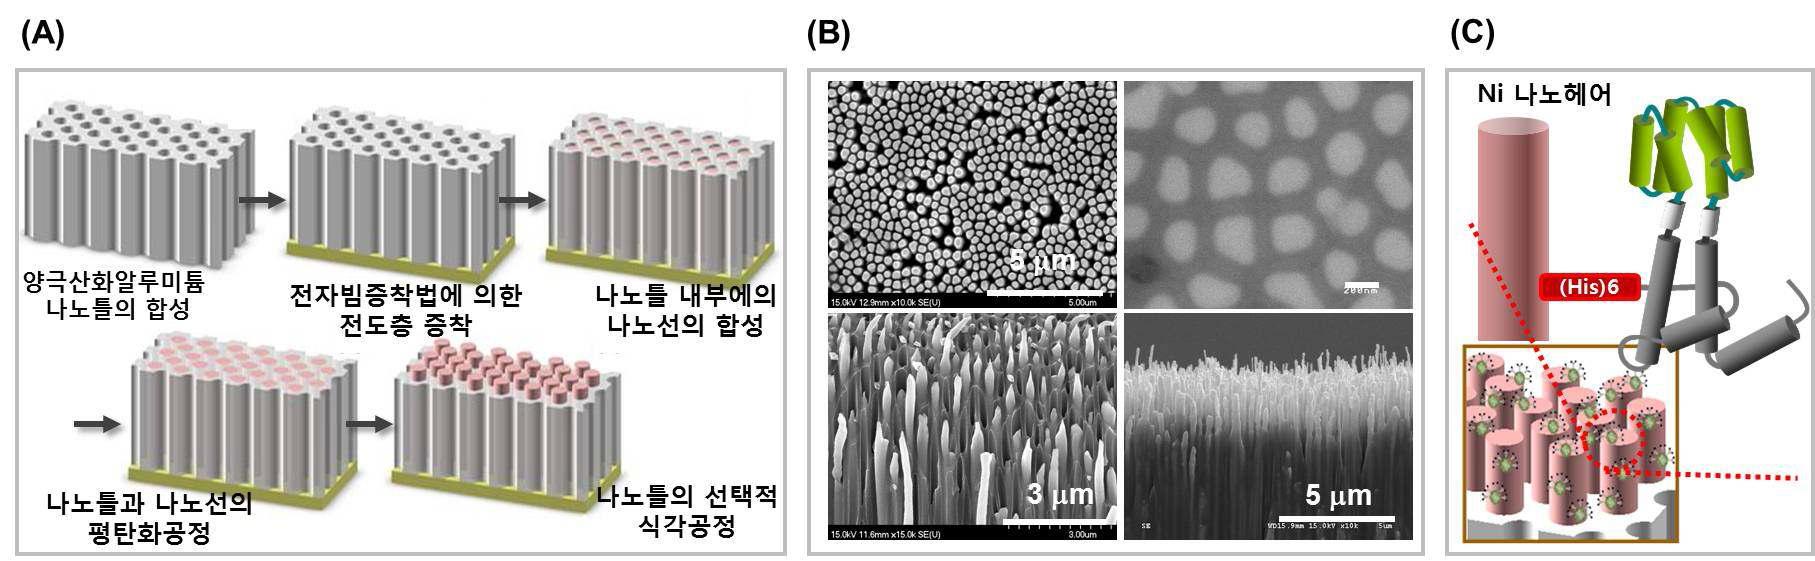 (A) Ni nanohair 제작 과정 모식도 (B) 제작된 Ni nanohair의 SEM 이미지, (C) Ni nano hair를 이용한 단백질 나노입자 프로브의 고정 모식도